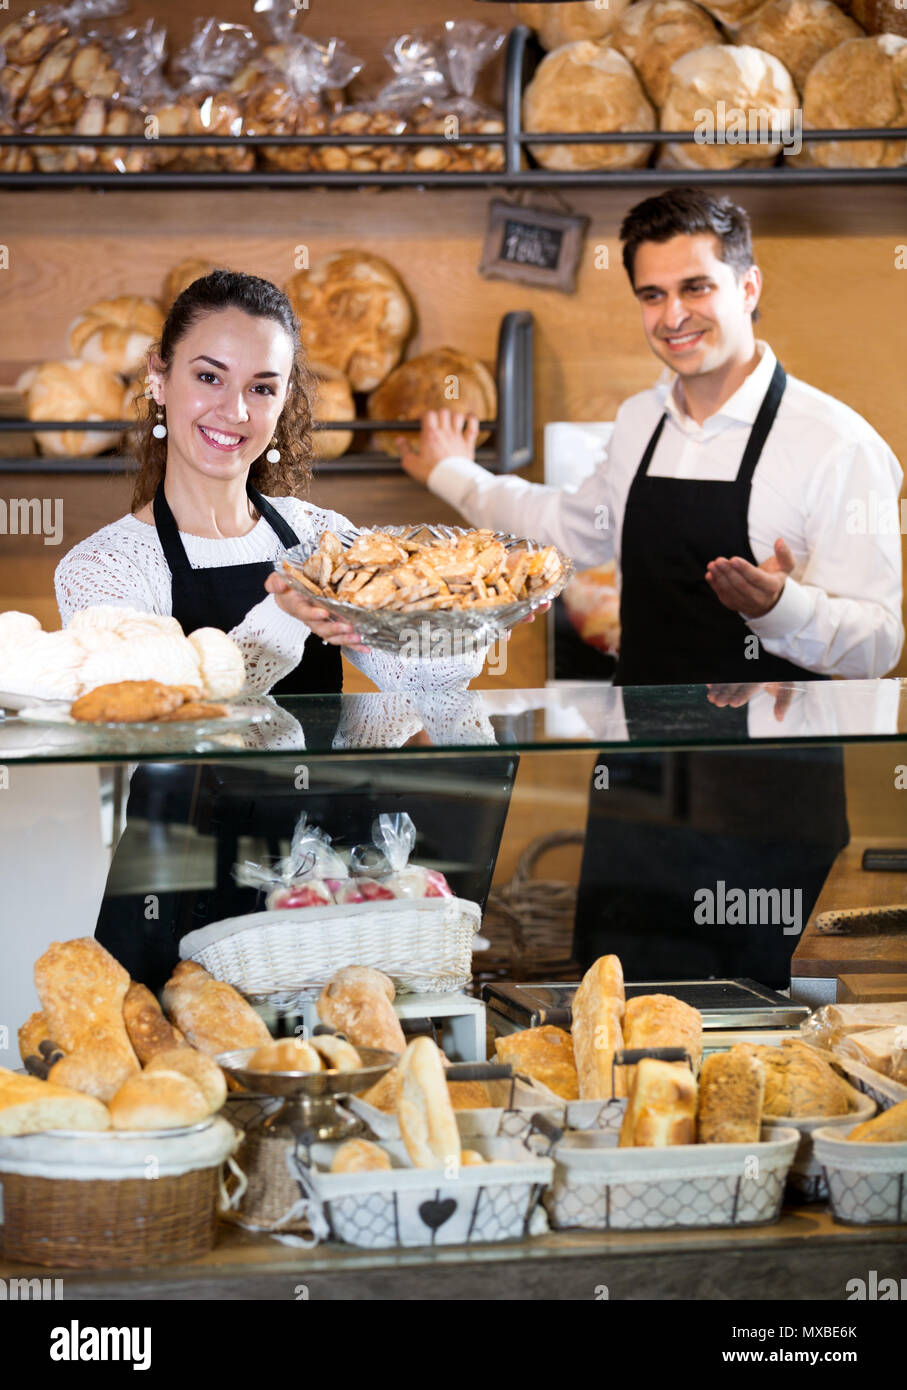 Cheerful young personnel vendeur offrant du pain et pâtisseries différentes à vendre Banque D'Images